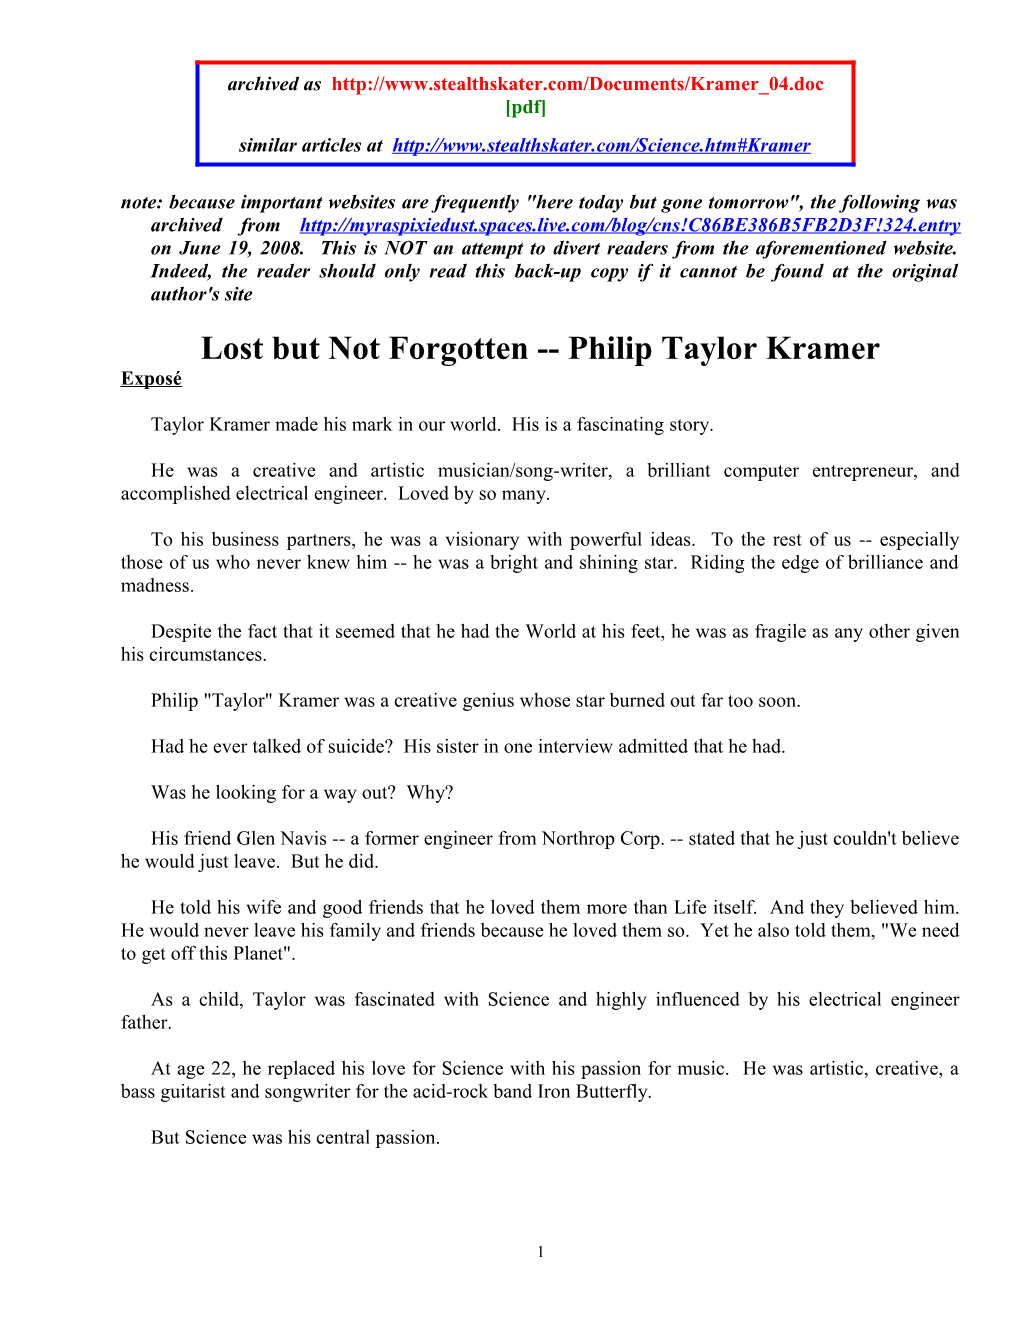 Lost but Not Forgotten Philip Taylor Kramer